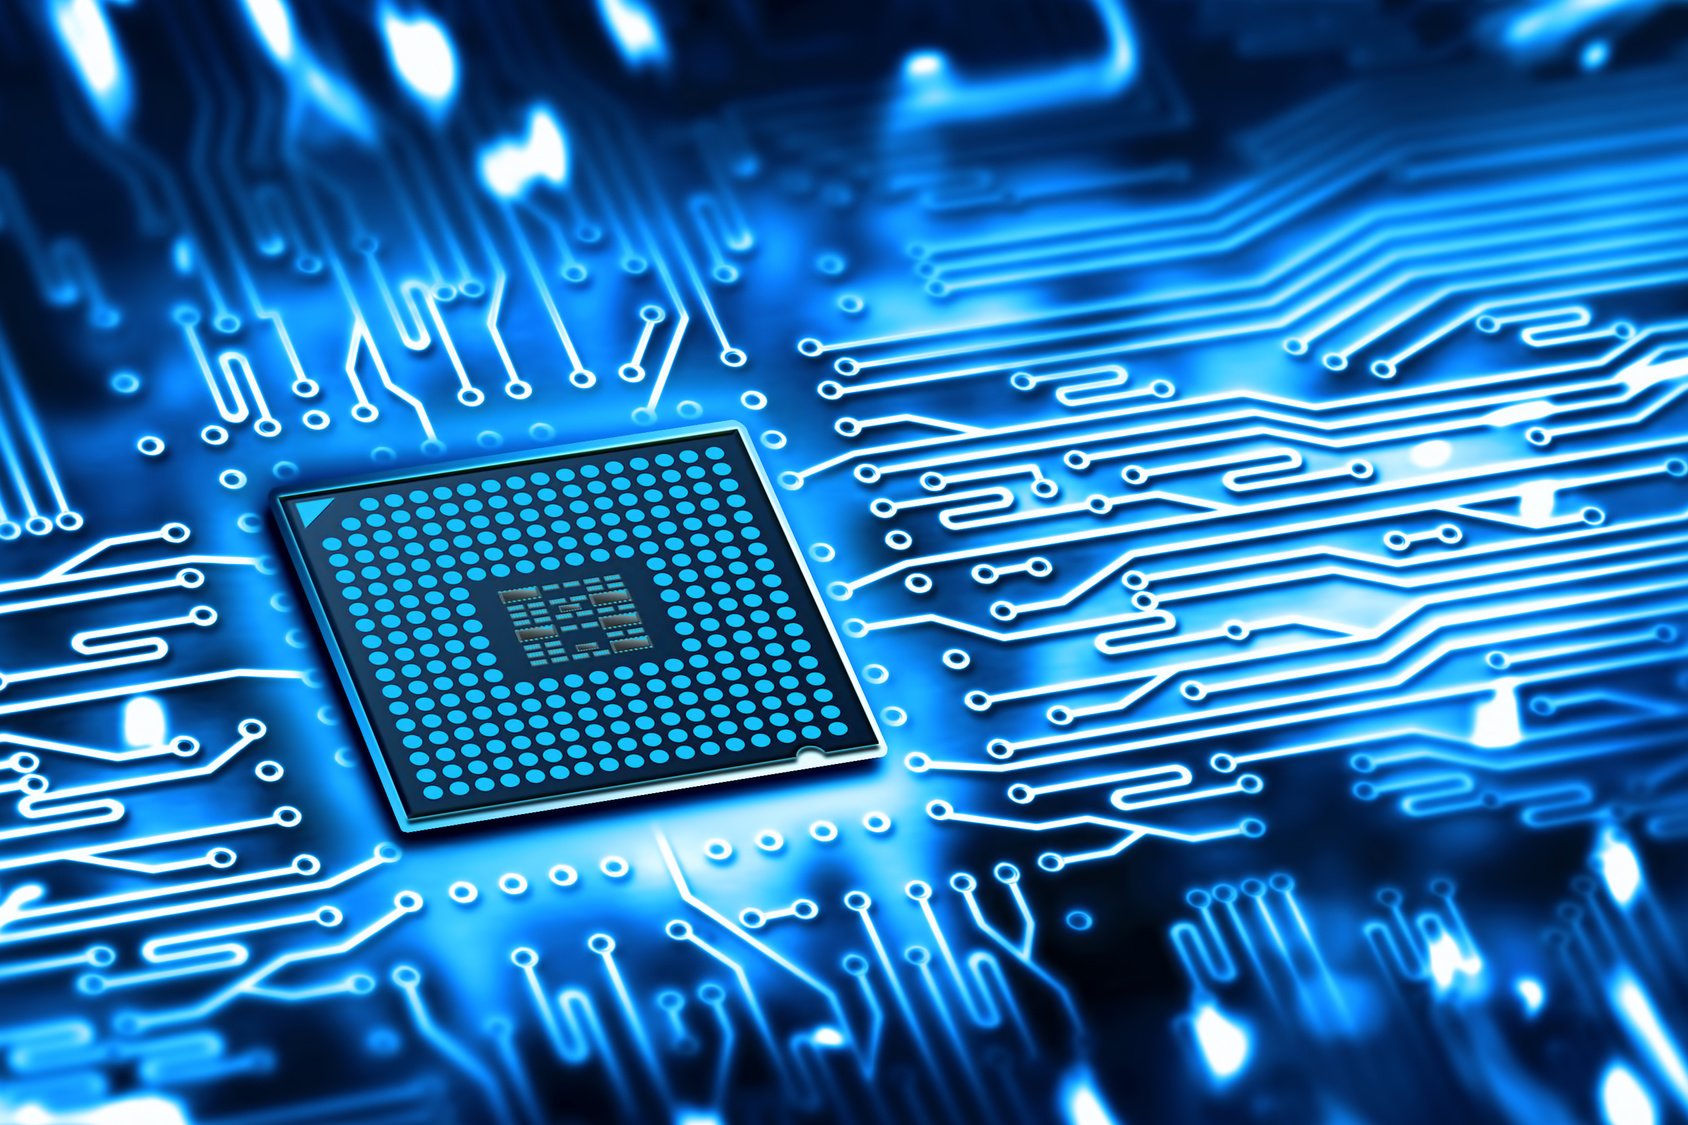  UE intenţionează să investească zeci de miliarde de euro în industria semiconductorilor